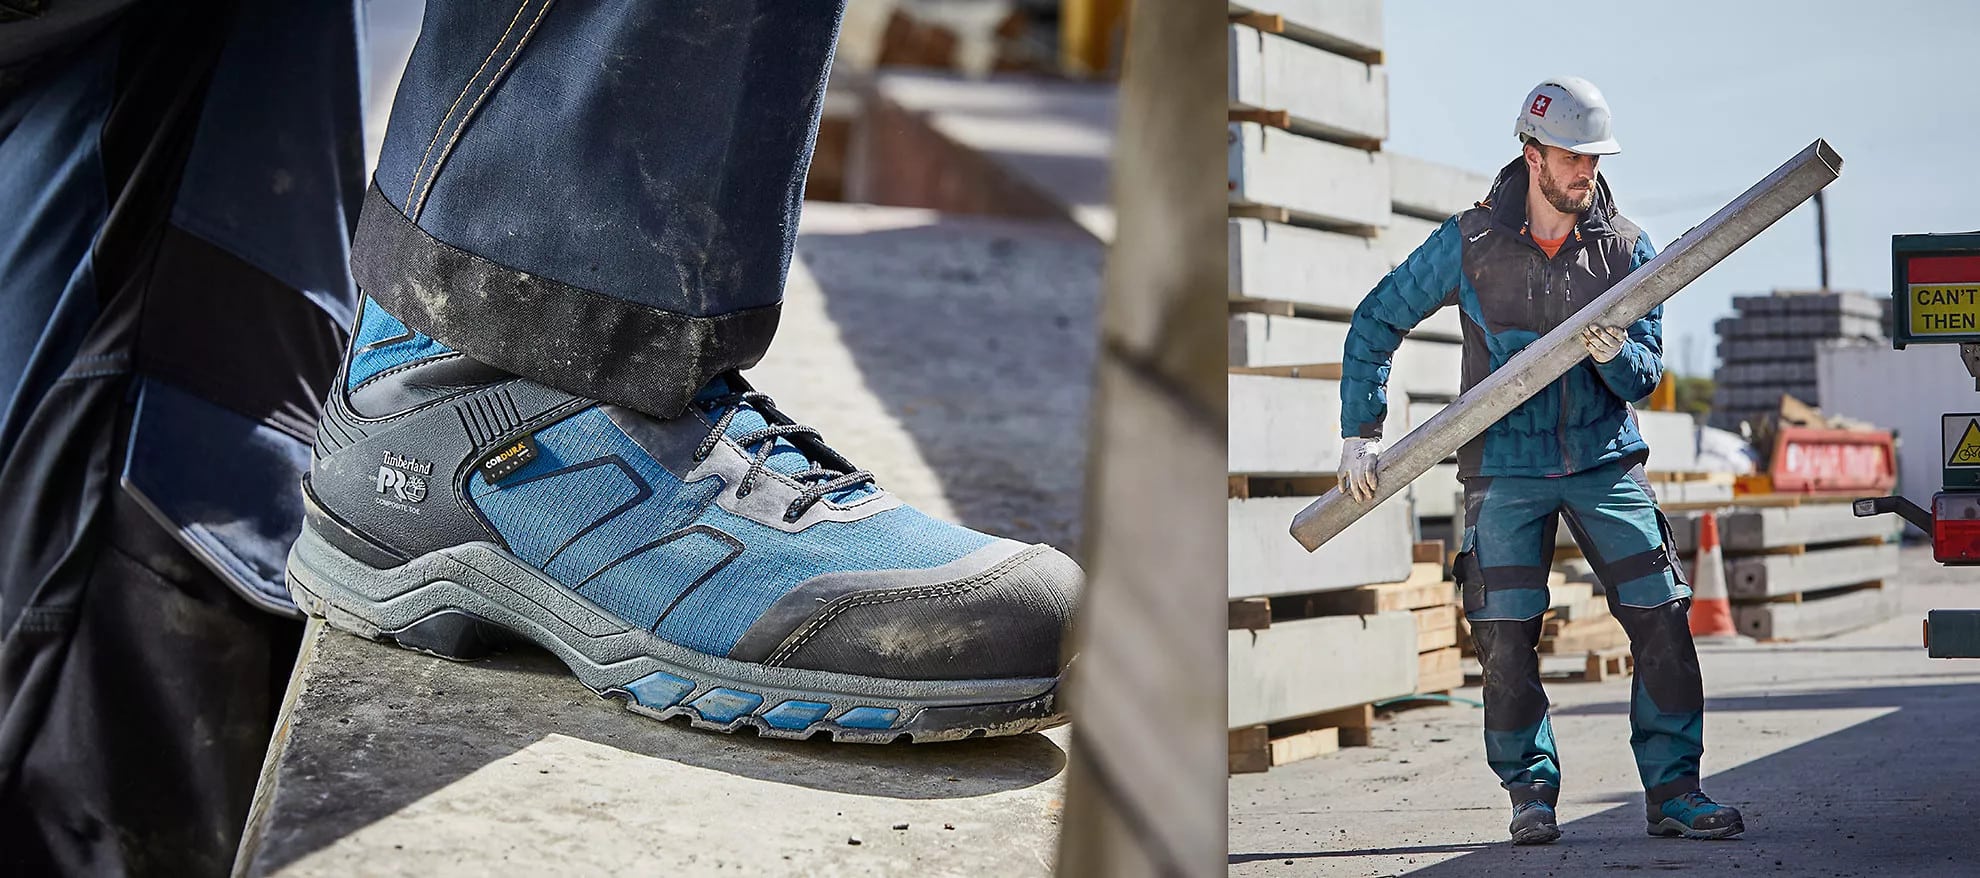 DYKHMILY Zapatos de Seguridad Puntera de Acero Luz Cómodo Anti Estático SRC Antideslizante Zapatos de Trabajo 